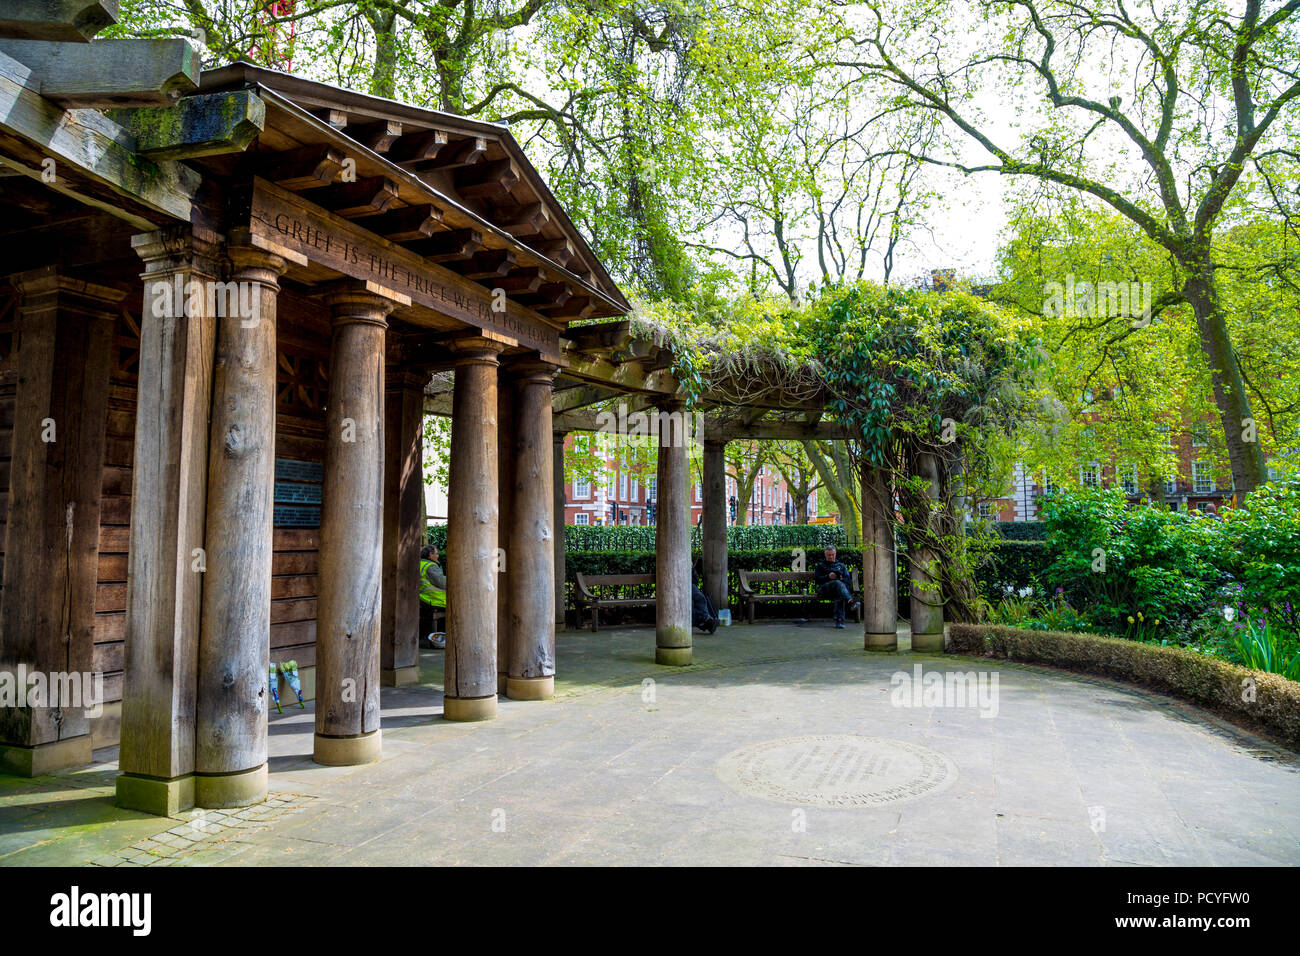 September 11 Memorial Garden at Grosvenor Park, London, UK Stock Photo